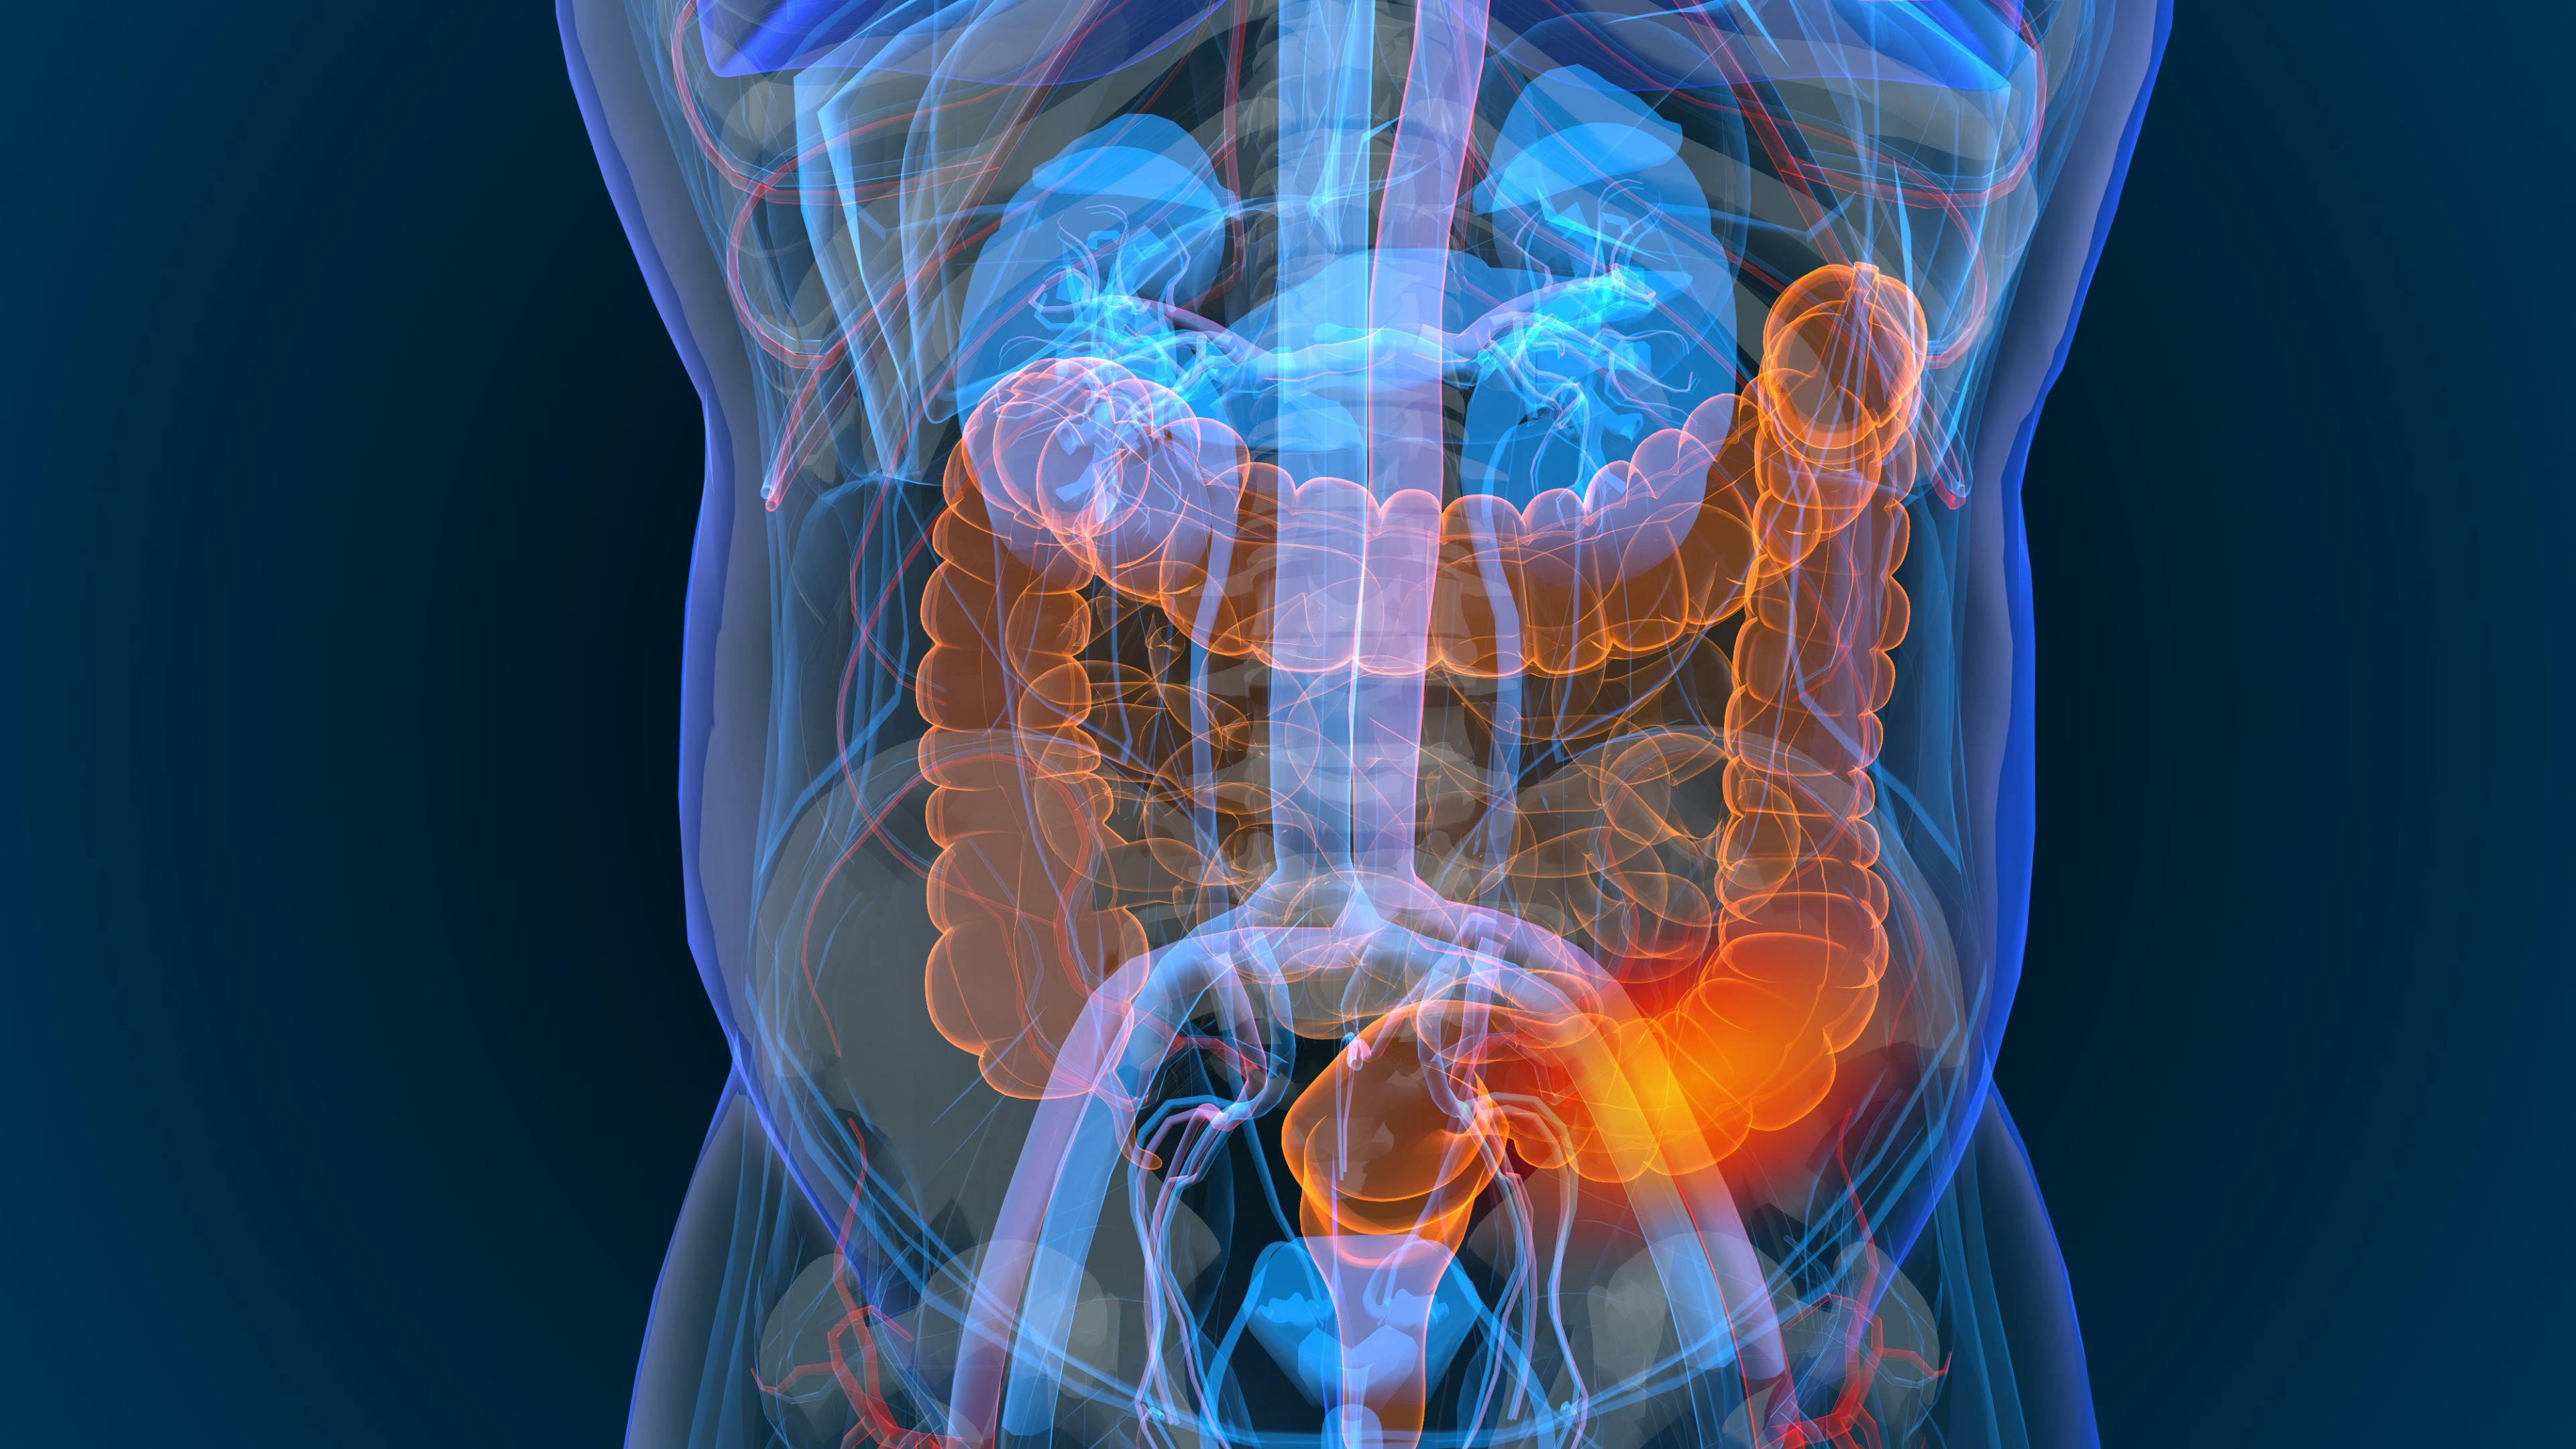 3d rendered illustration of bowel cancer 3D illustration | Image Credit: appledesign - stock.adobe.com